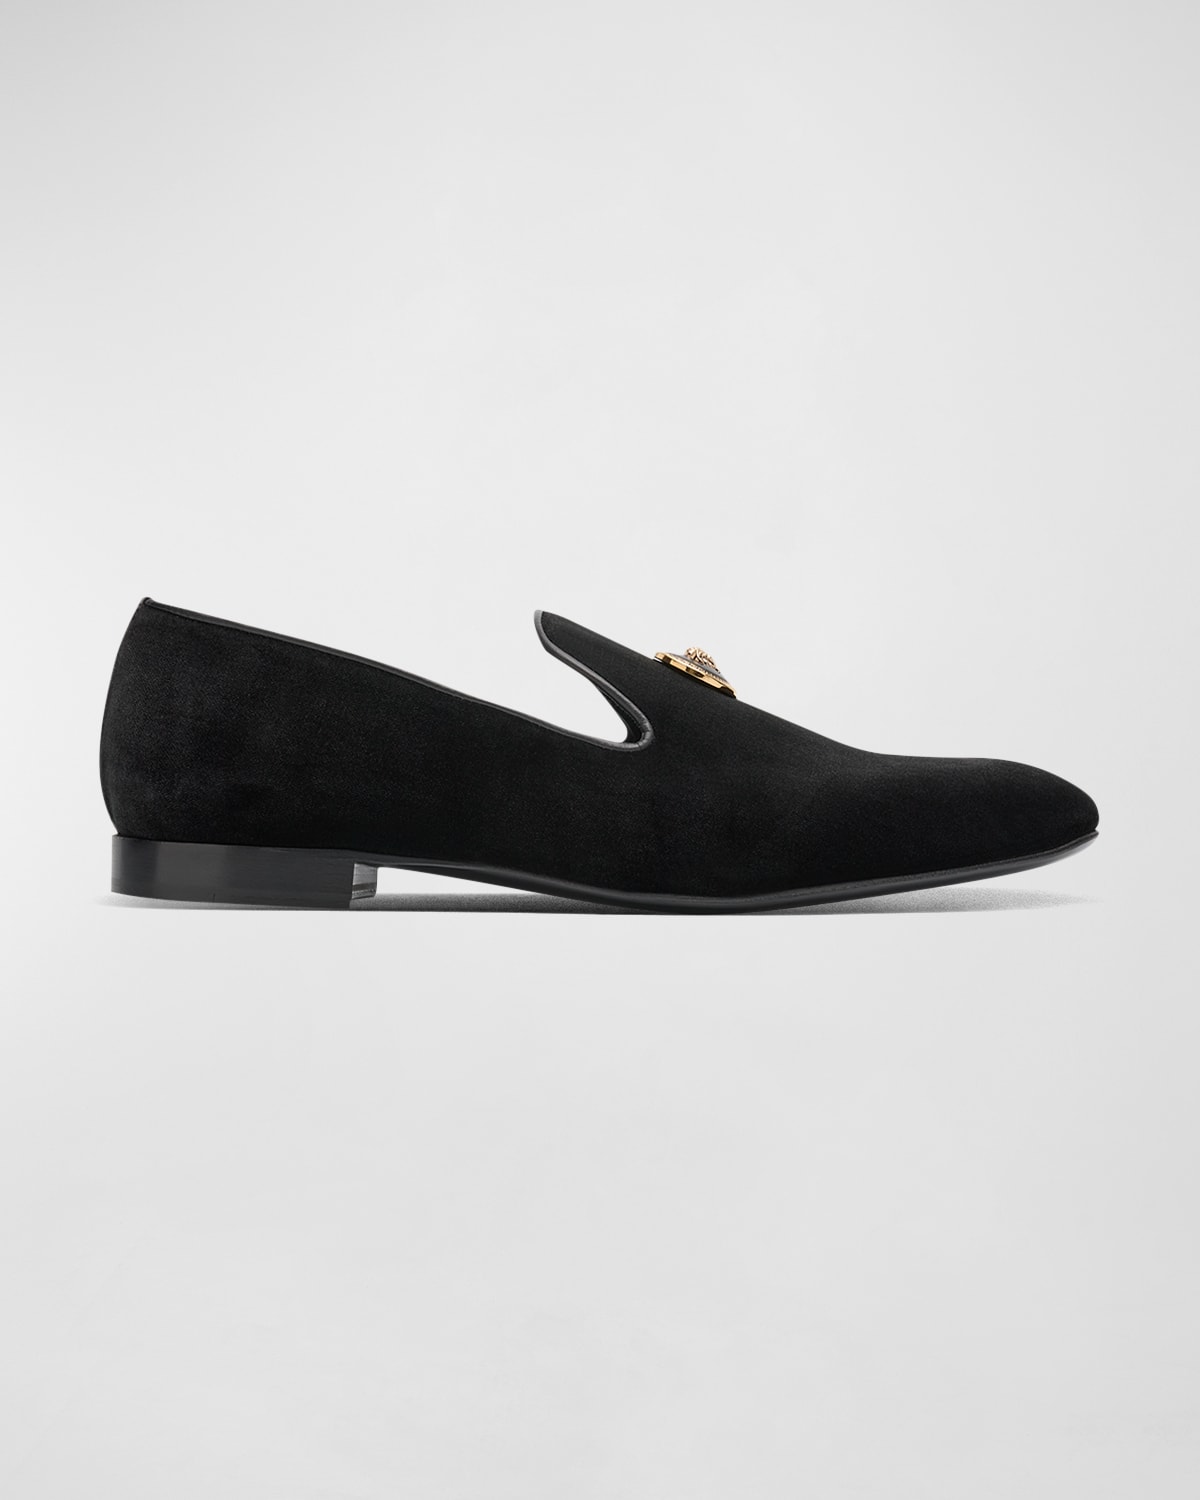 Versace Men's Croc-Effect Leather Smoking Slippers | Neiman Marcus